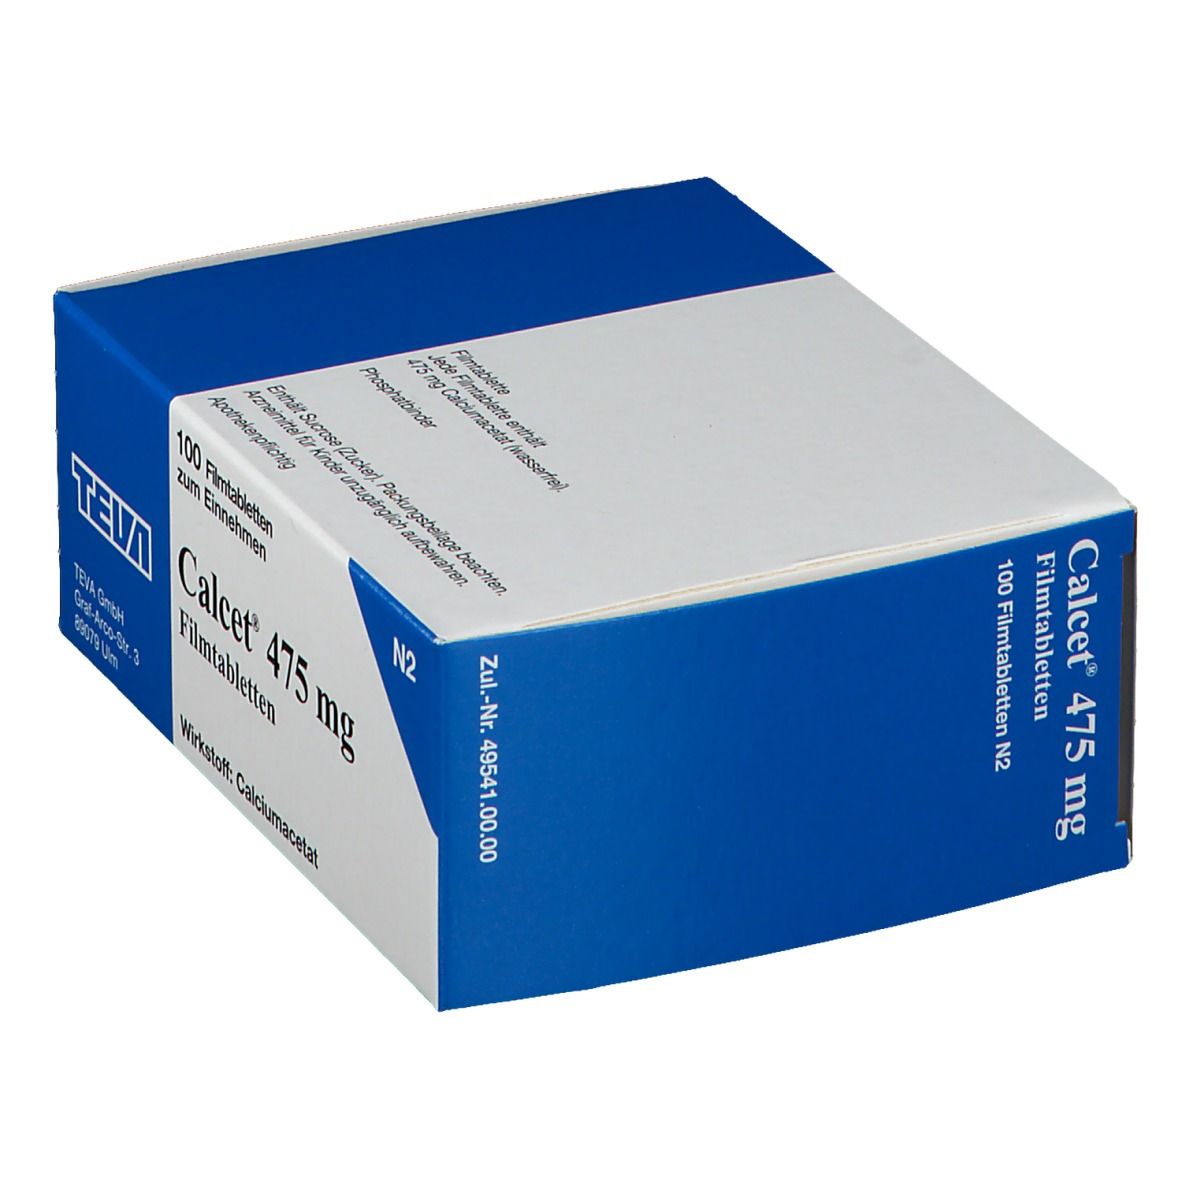 Calcet® 475 mg Filmtabletten